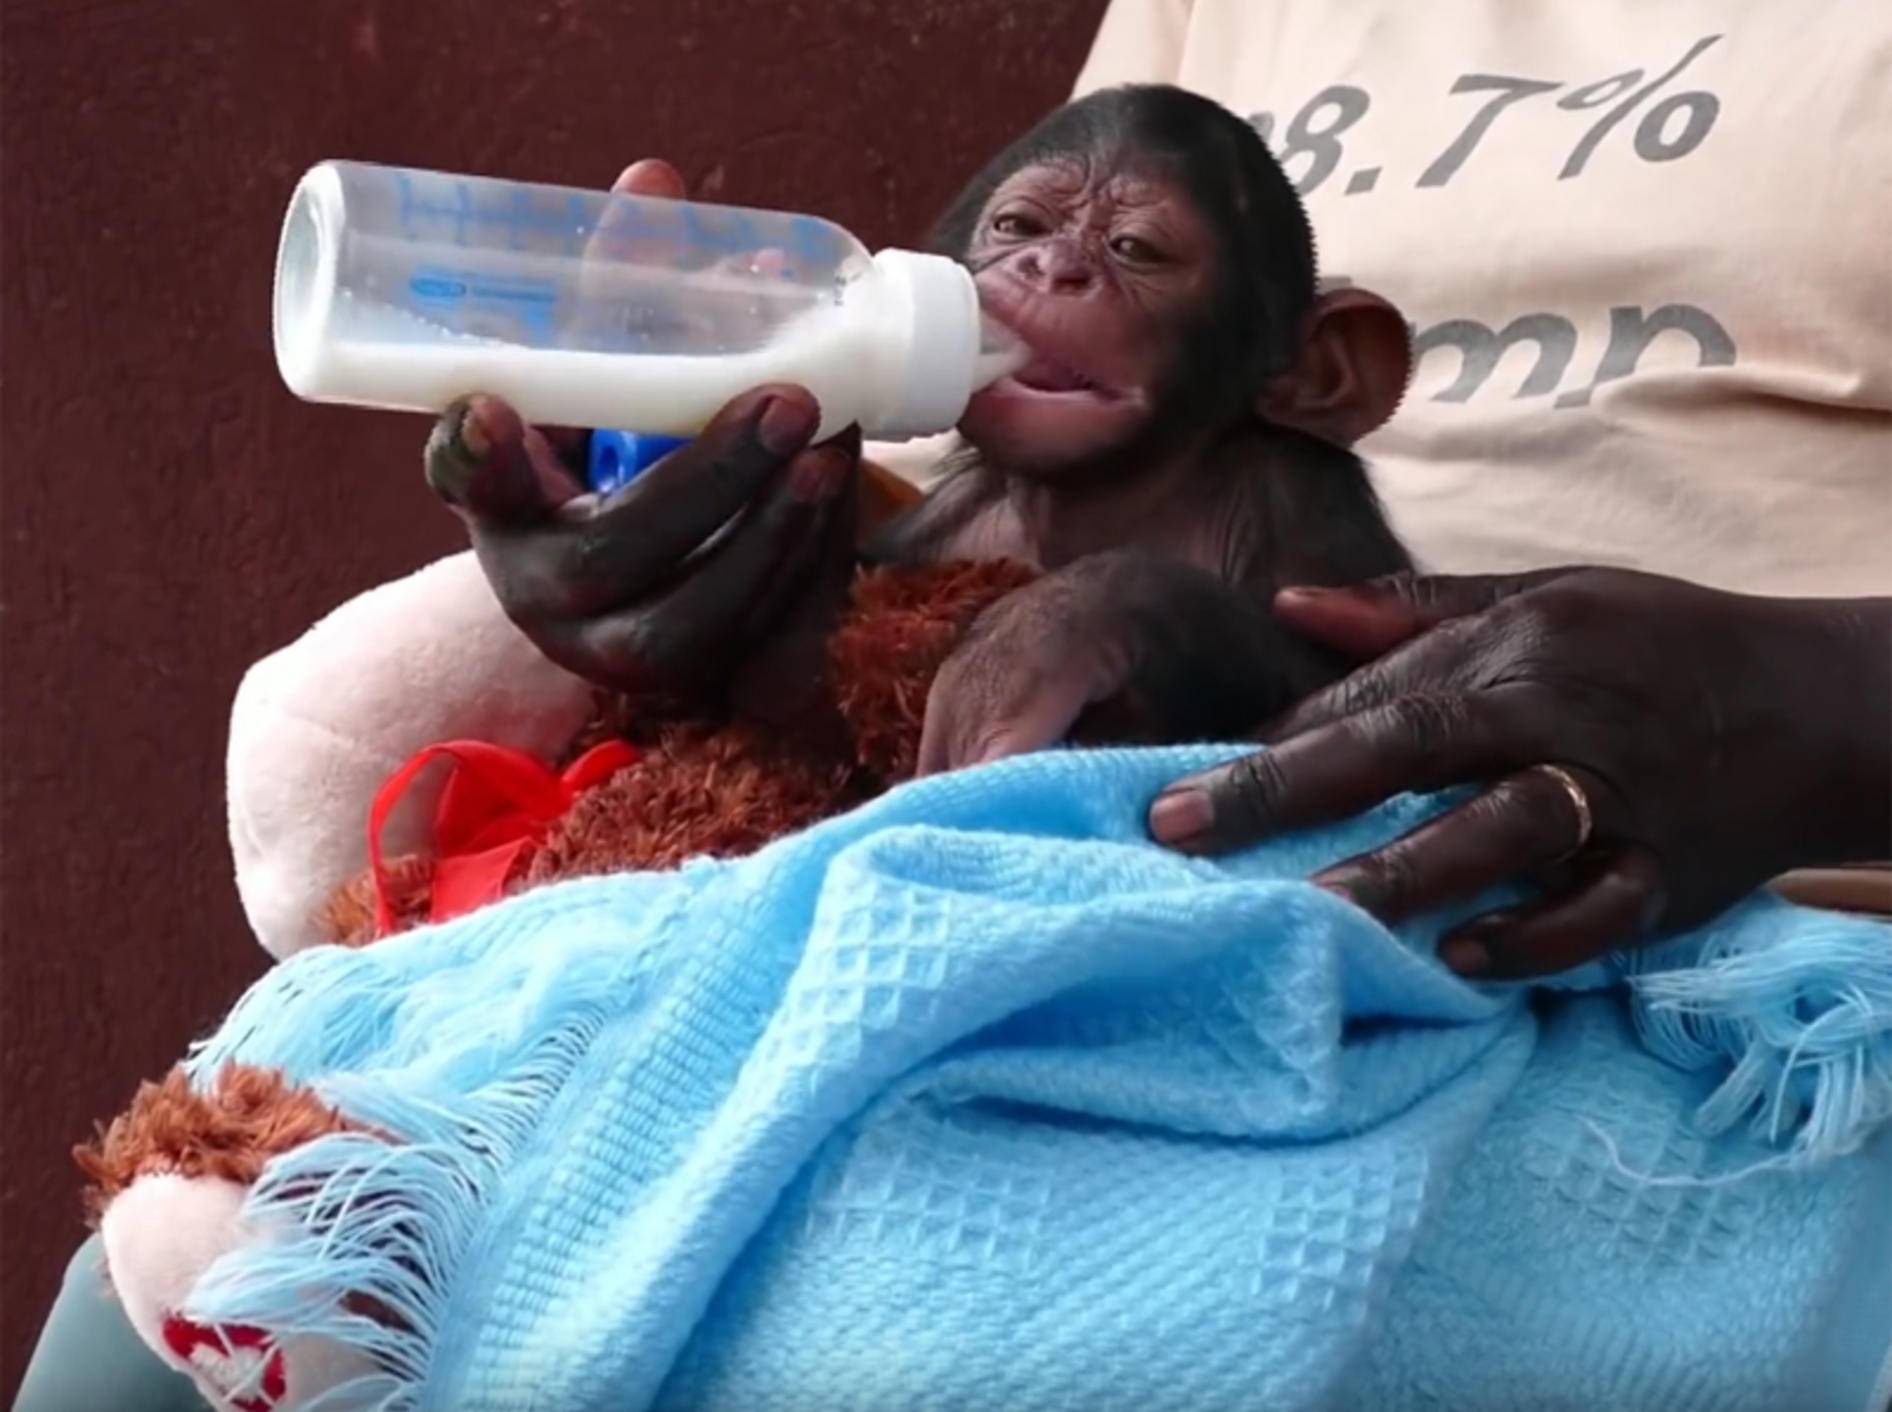 Lecker, Milch! Baby-Schimpanse lässt es sich schmecken – YouTube / Debra Durham